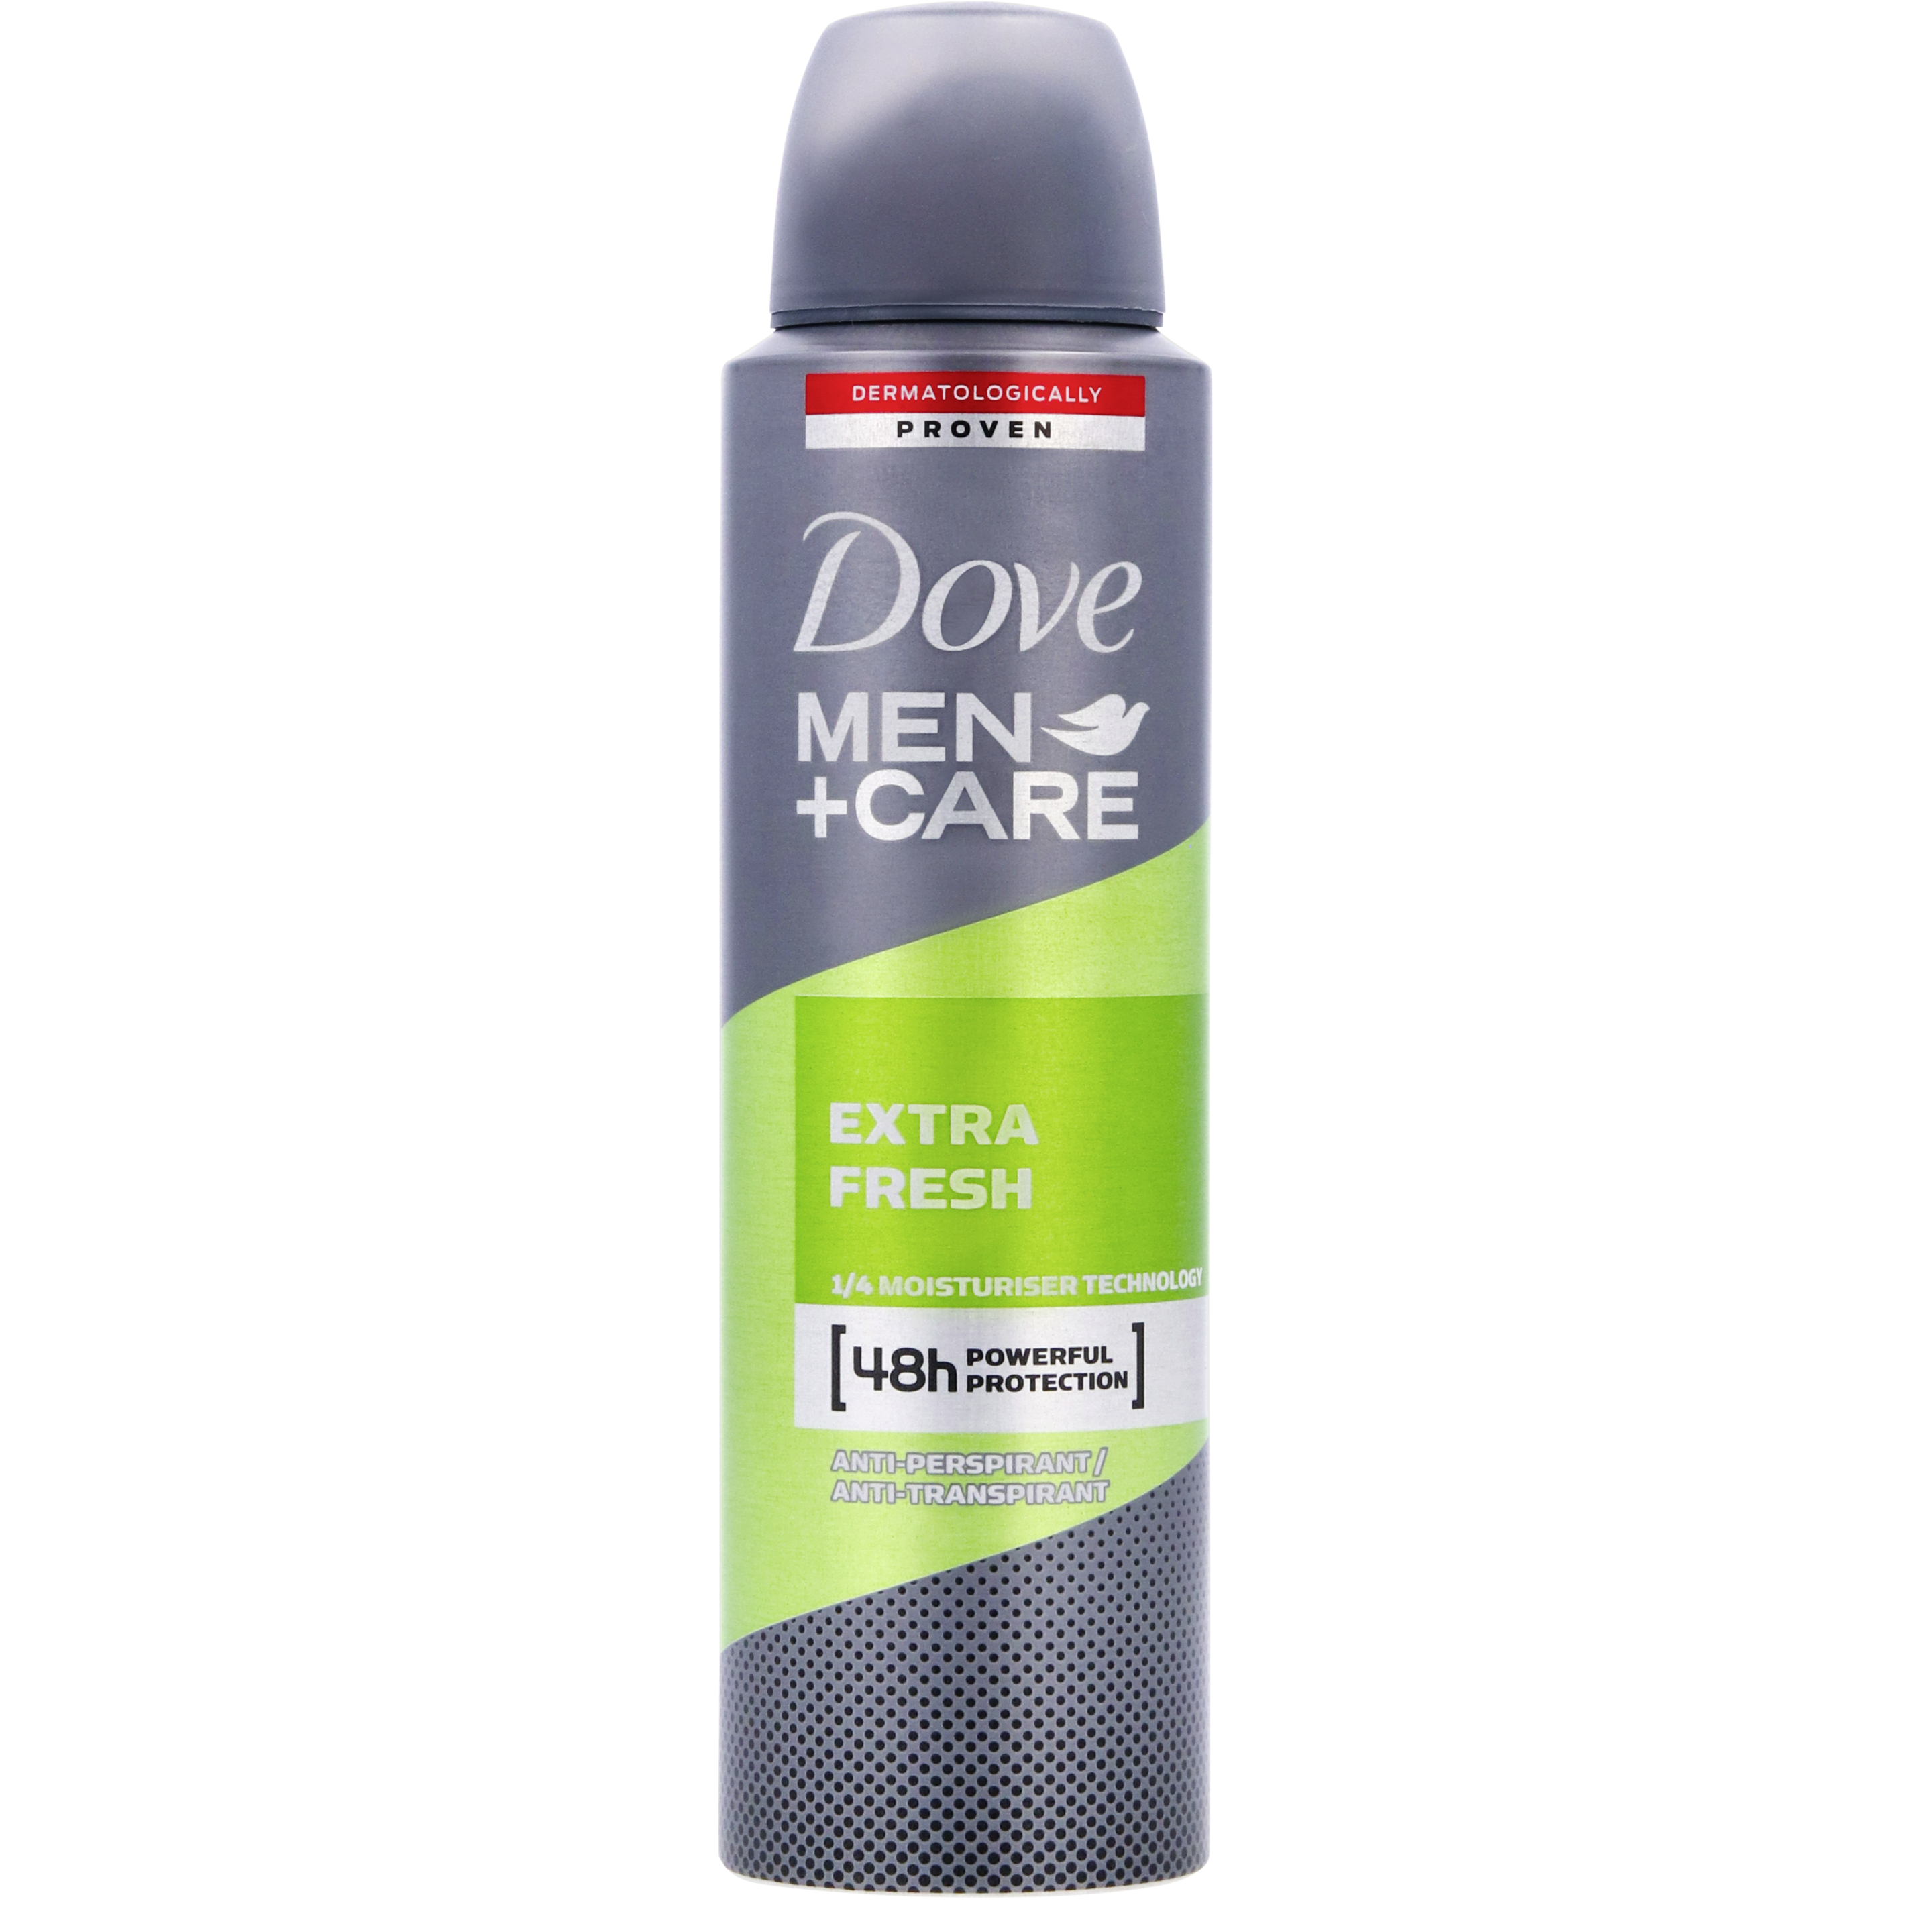 Dove Extra Fresh deodorantspray 150ml